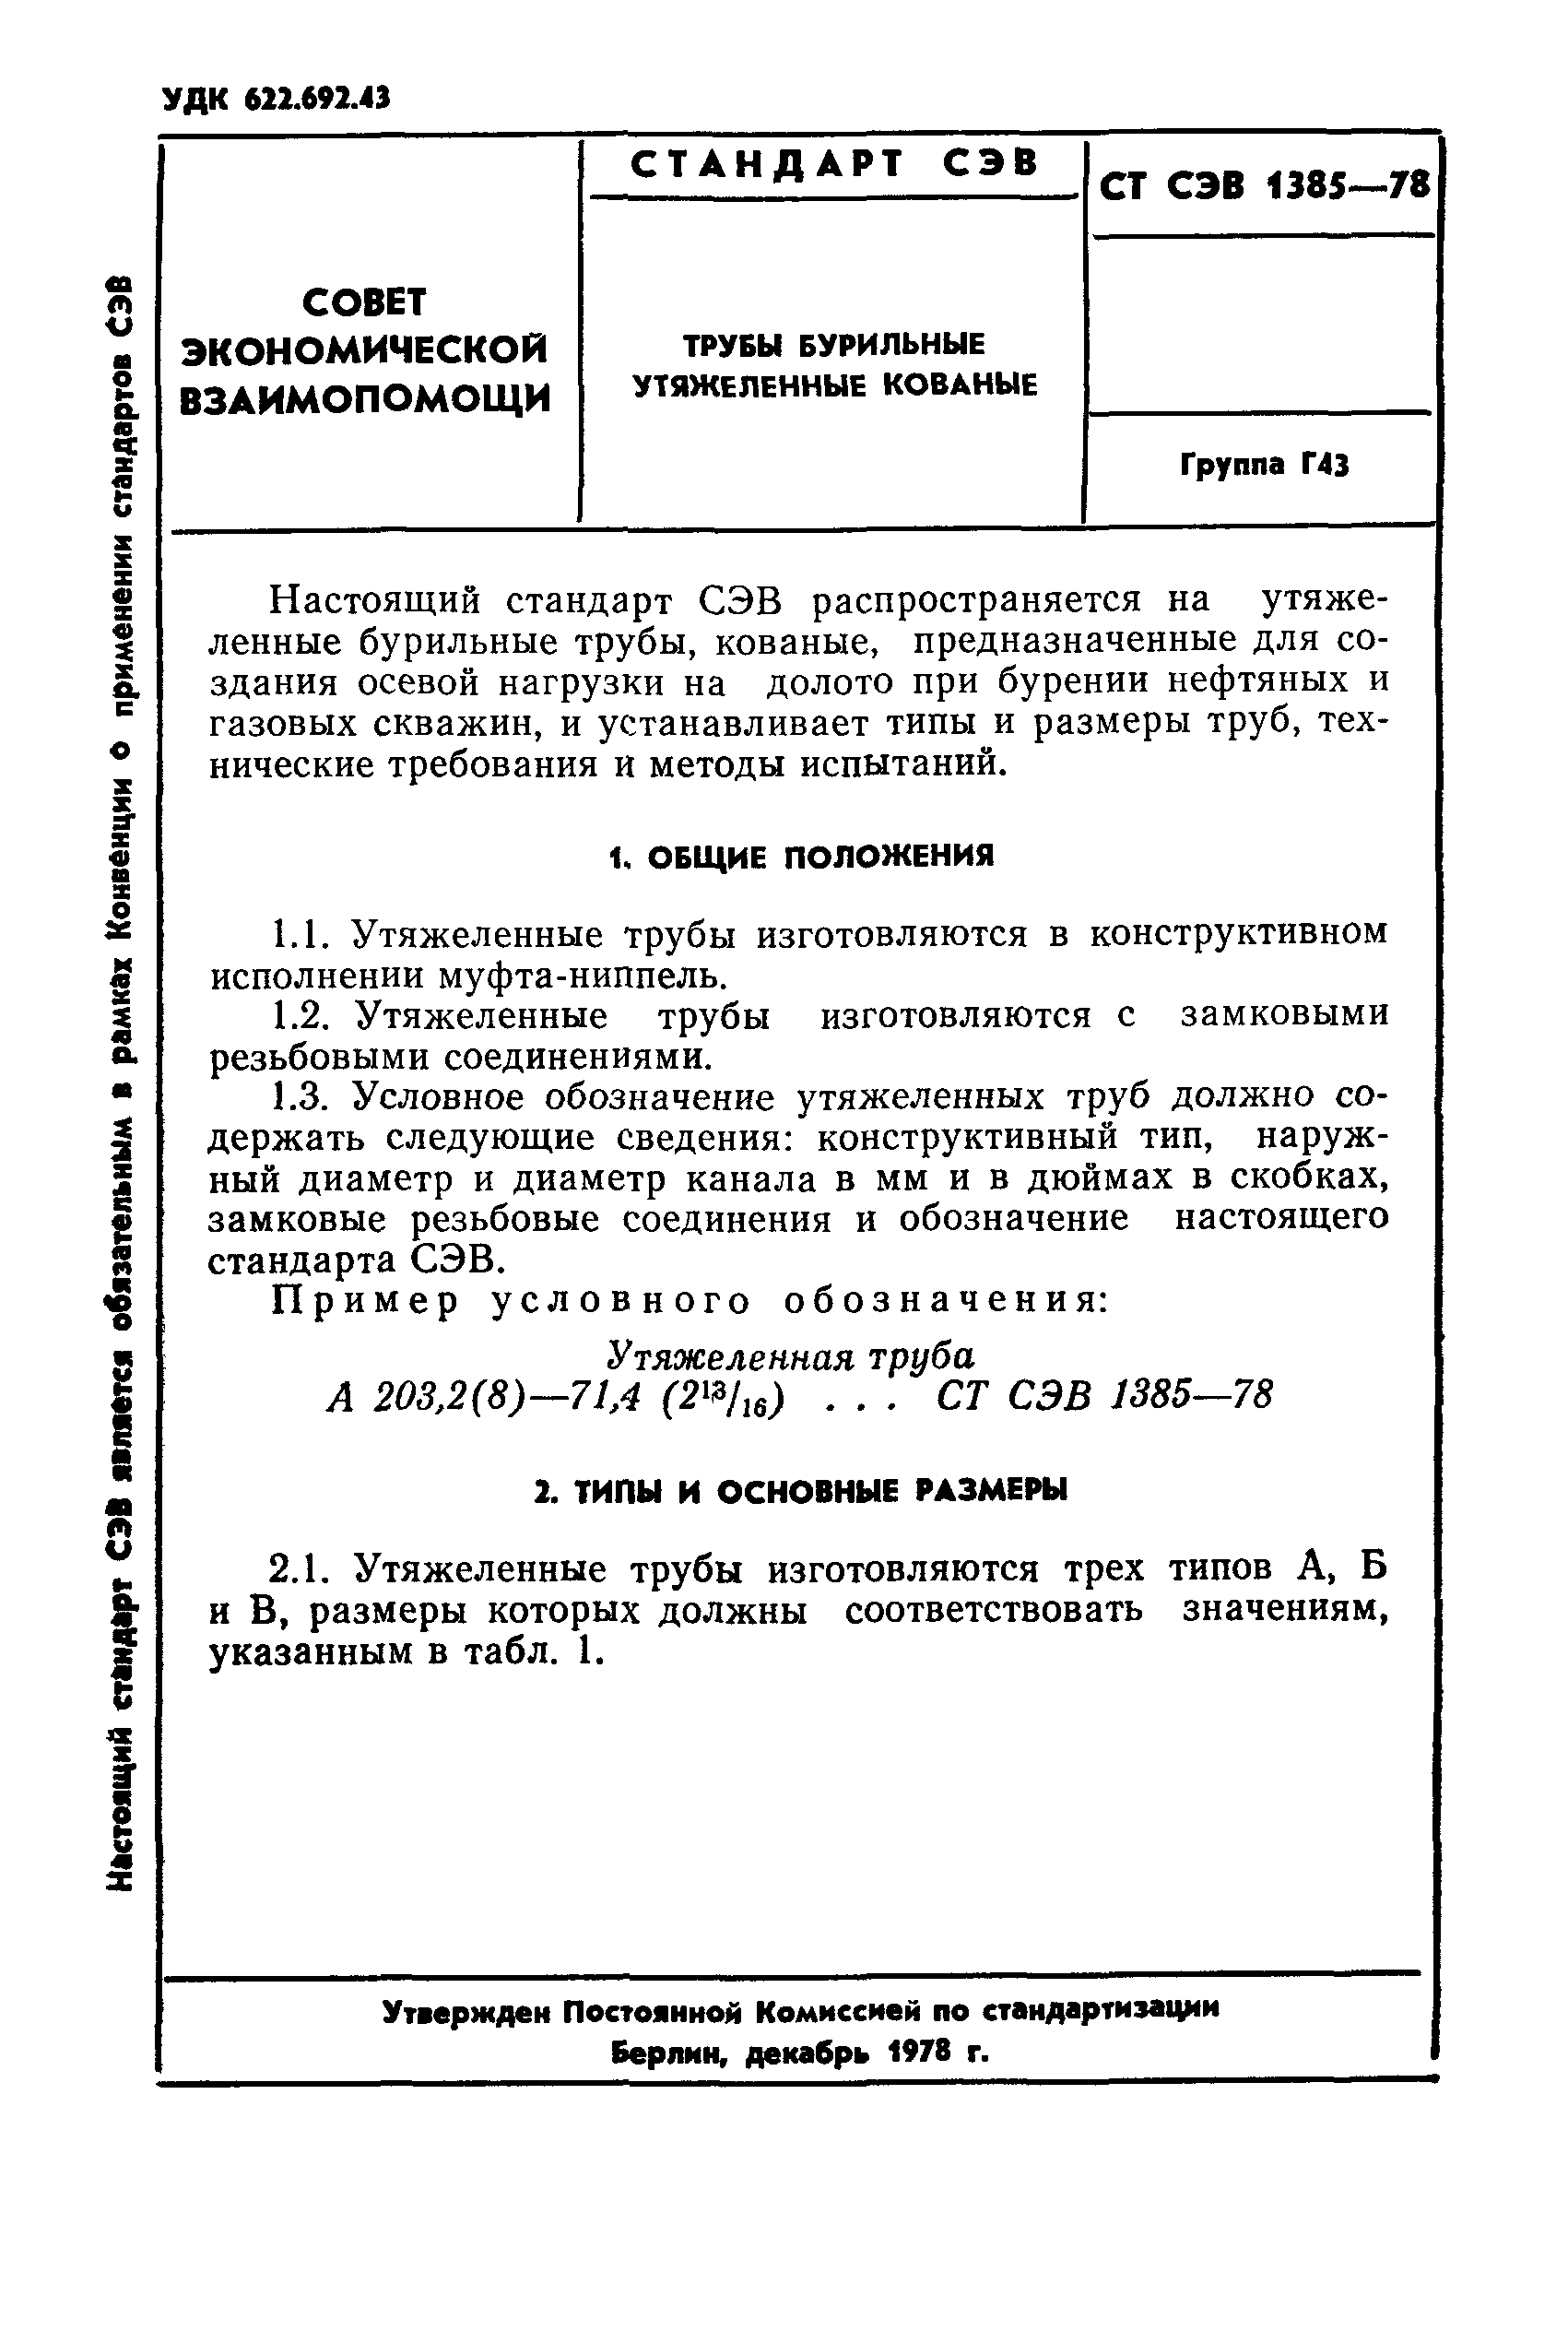 СТ СЭВ 1385-78